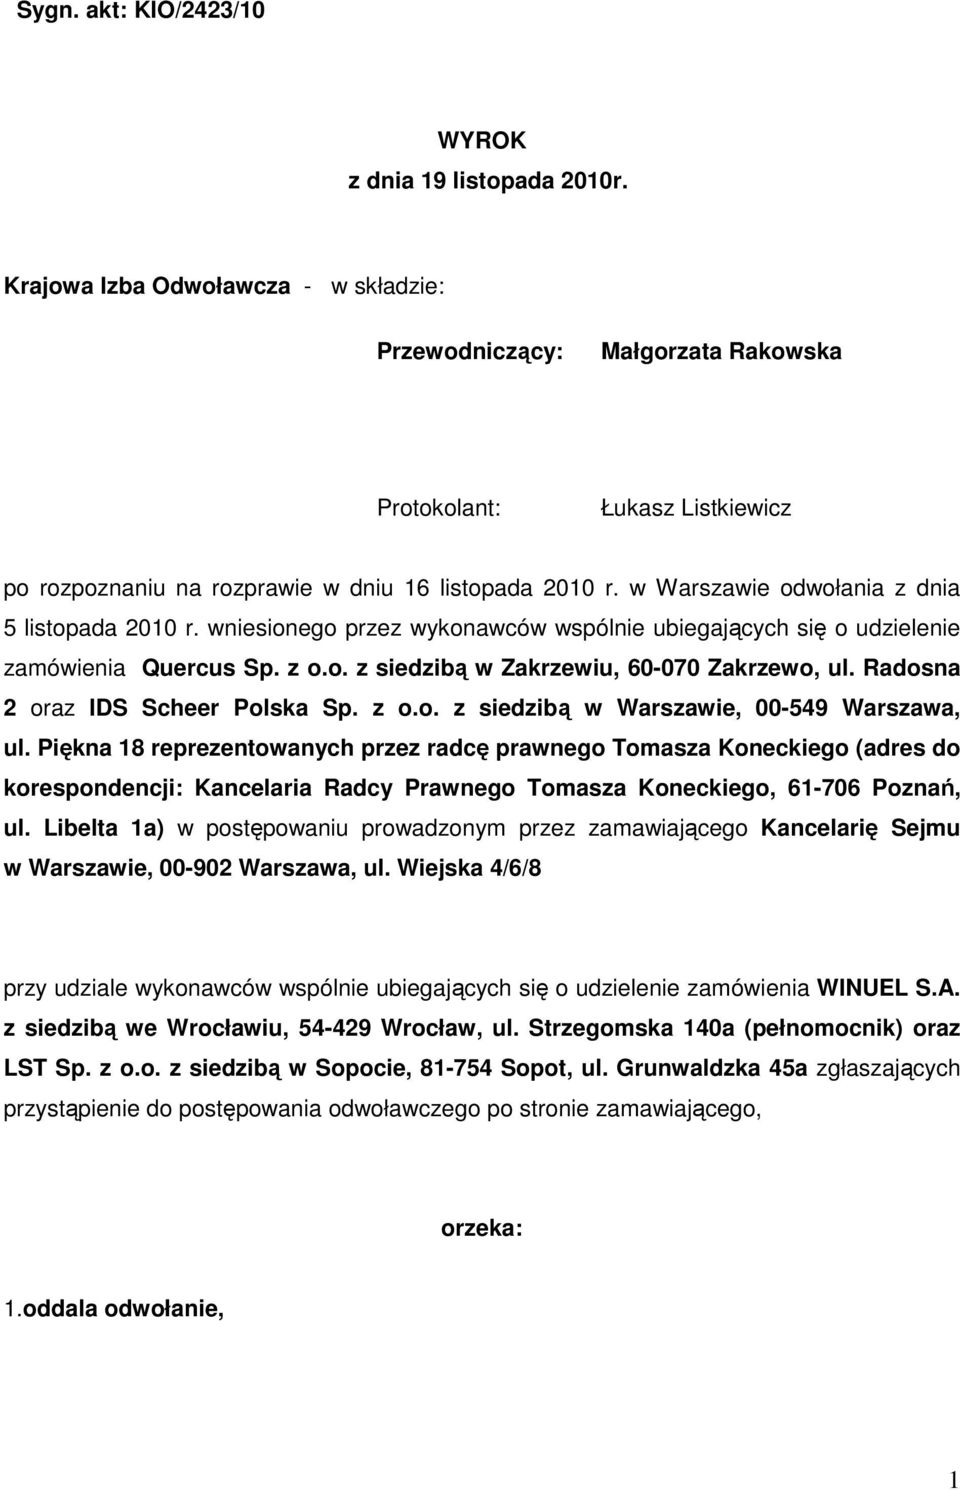 w Warszawie odwołania z dnia 5 listopada 2010 r. wniesionego przez wykonawców wspólnie ubiegających się o udzielenie zamówienia Quercus Sp. z o.o. z siedzibą w Zakrzewiu, 60-070 Zakrzewo, ul.